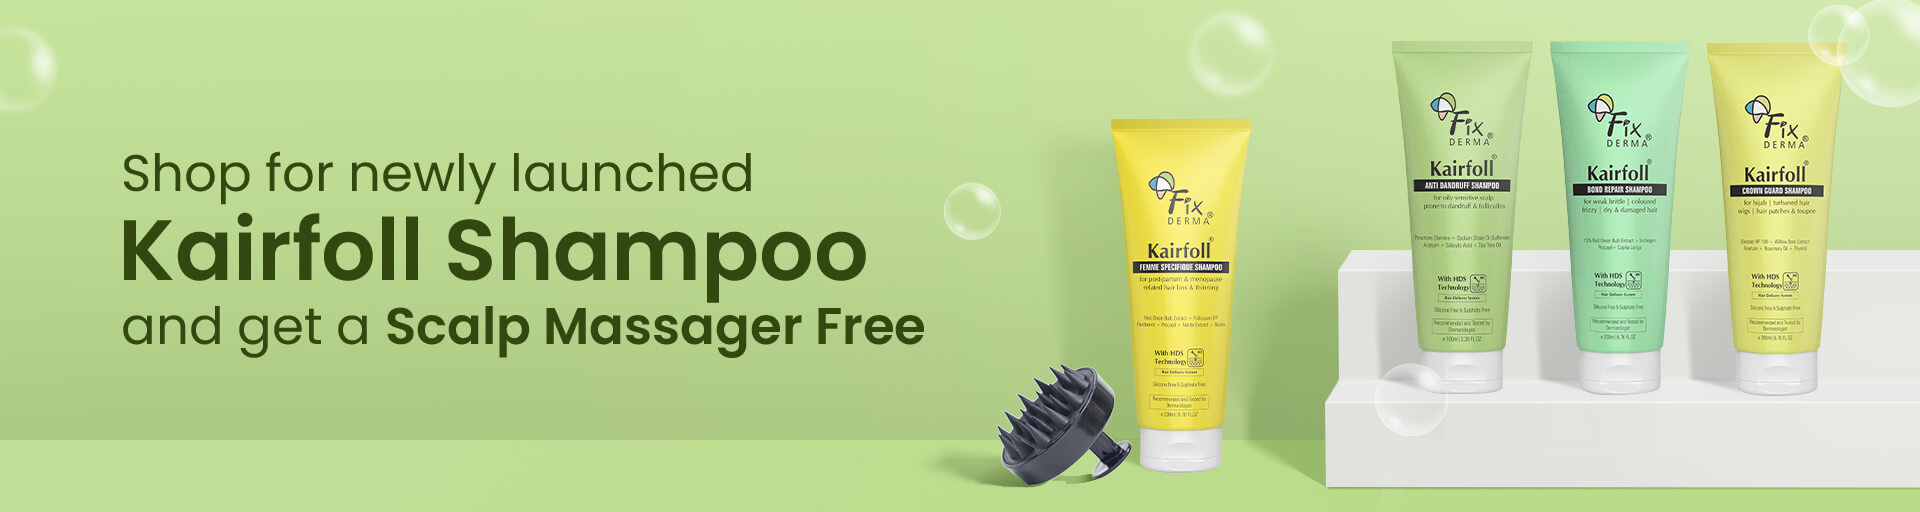 Kairfoll Shampoo